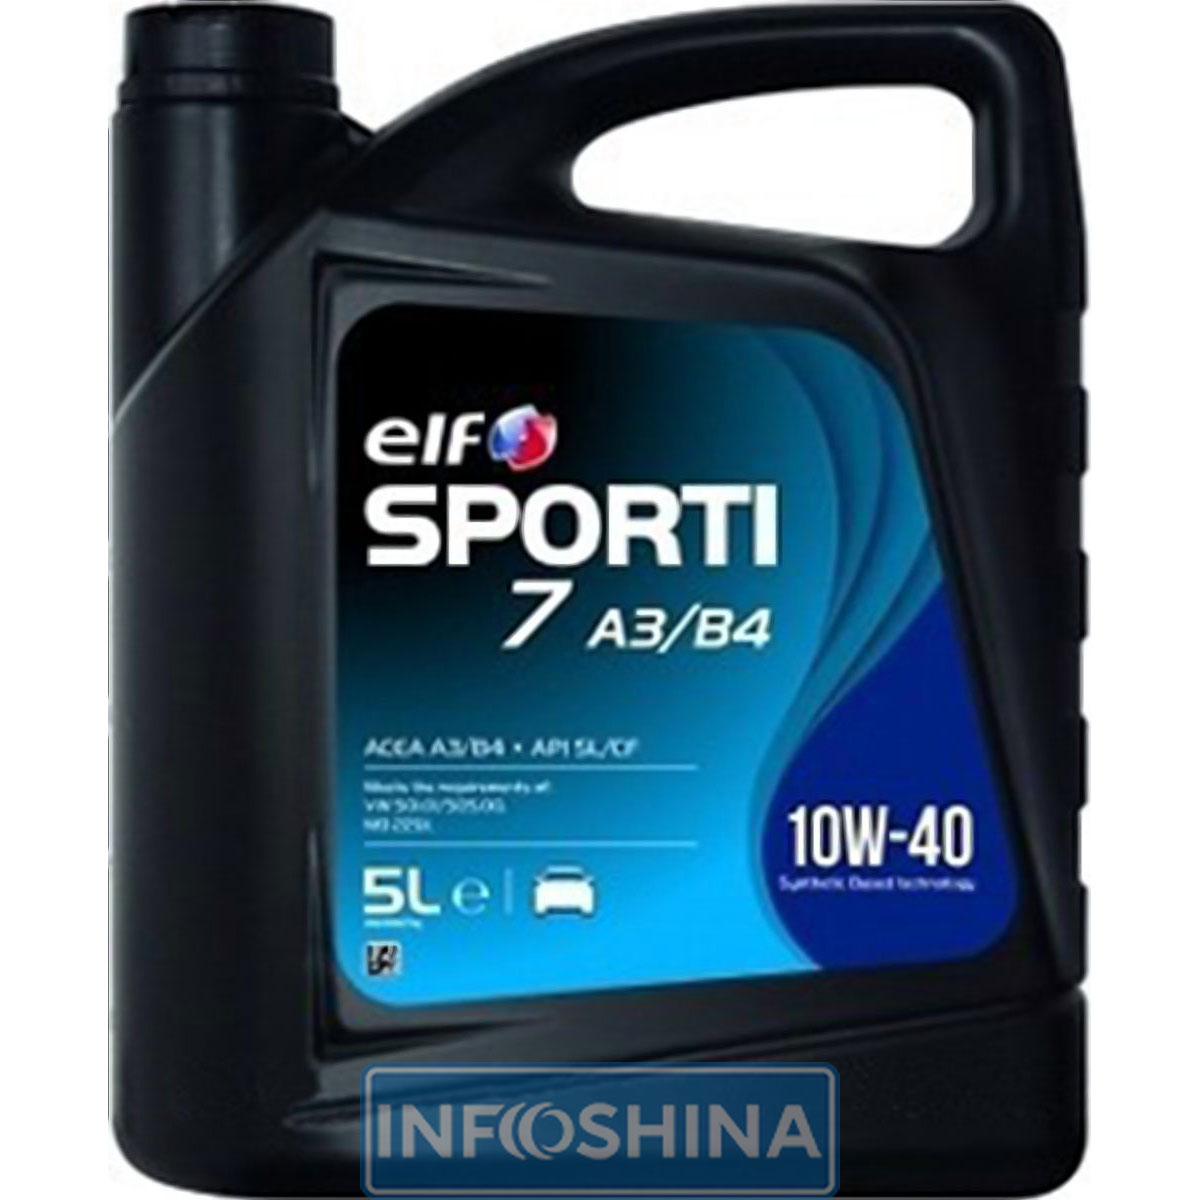 Купити масло ELF Sporti 7 10W-40 A3/B4 (5л)